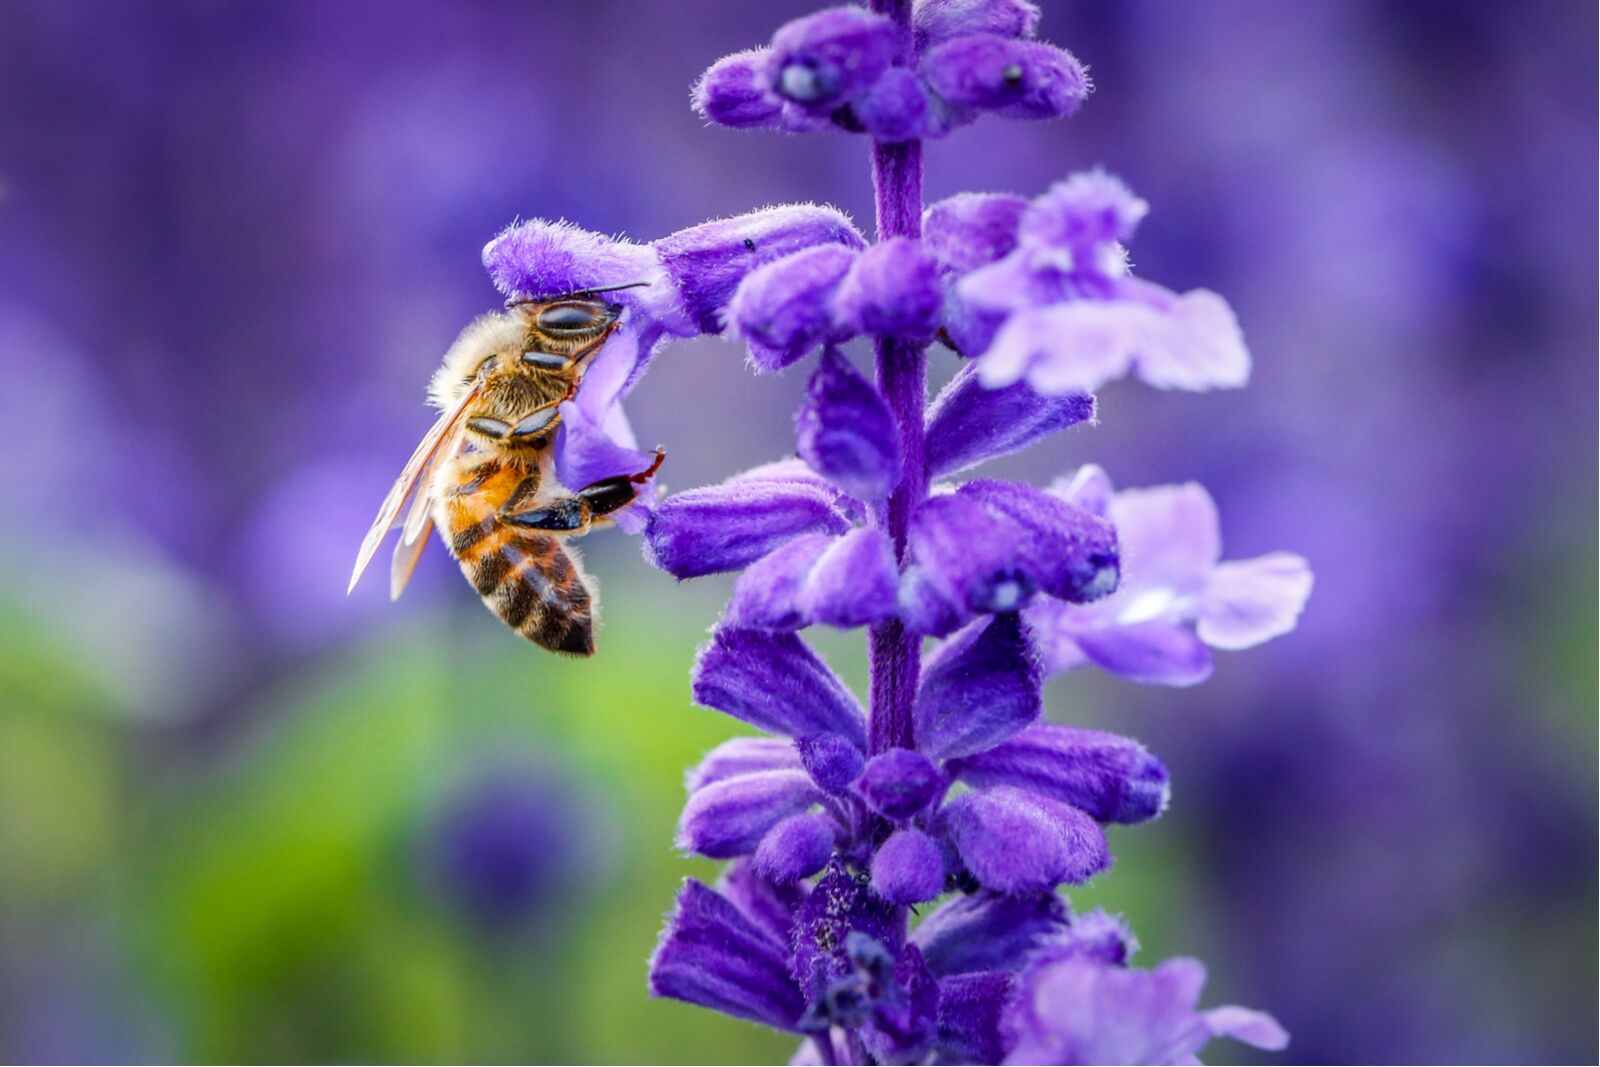 biodiveristy - bee on flower